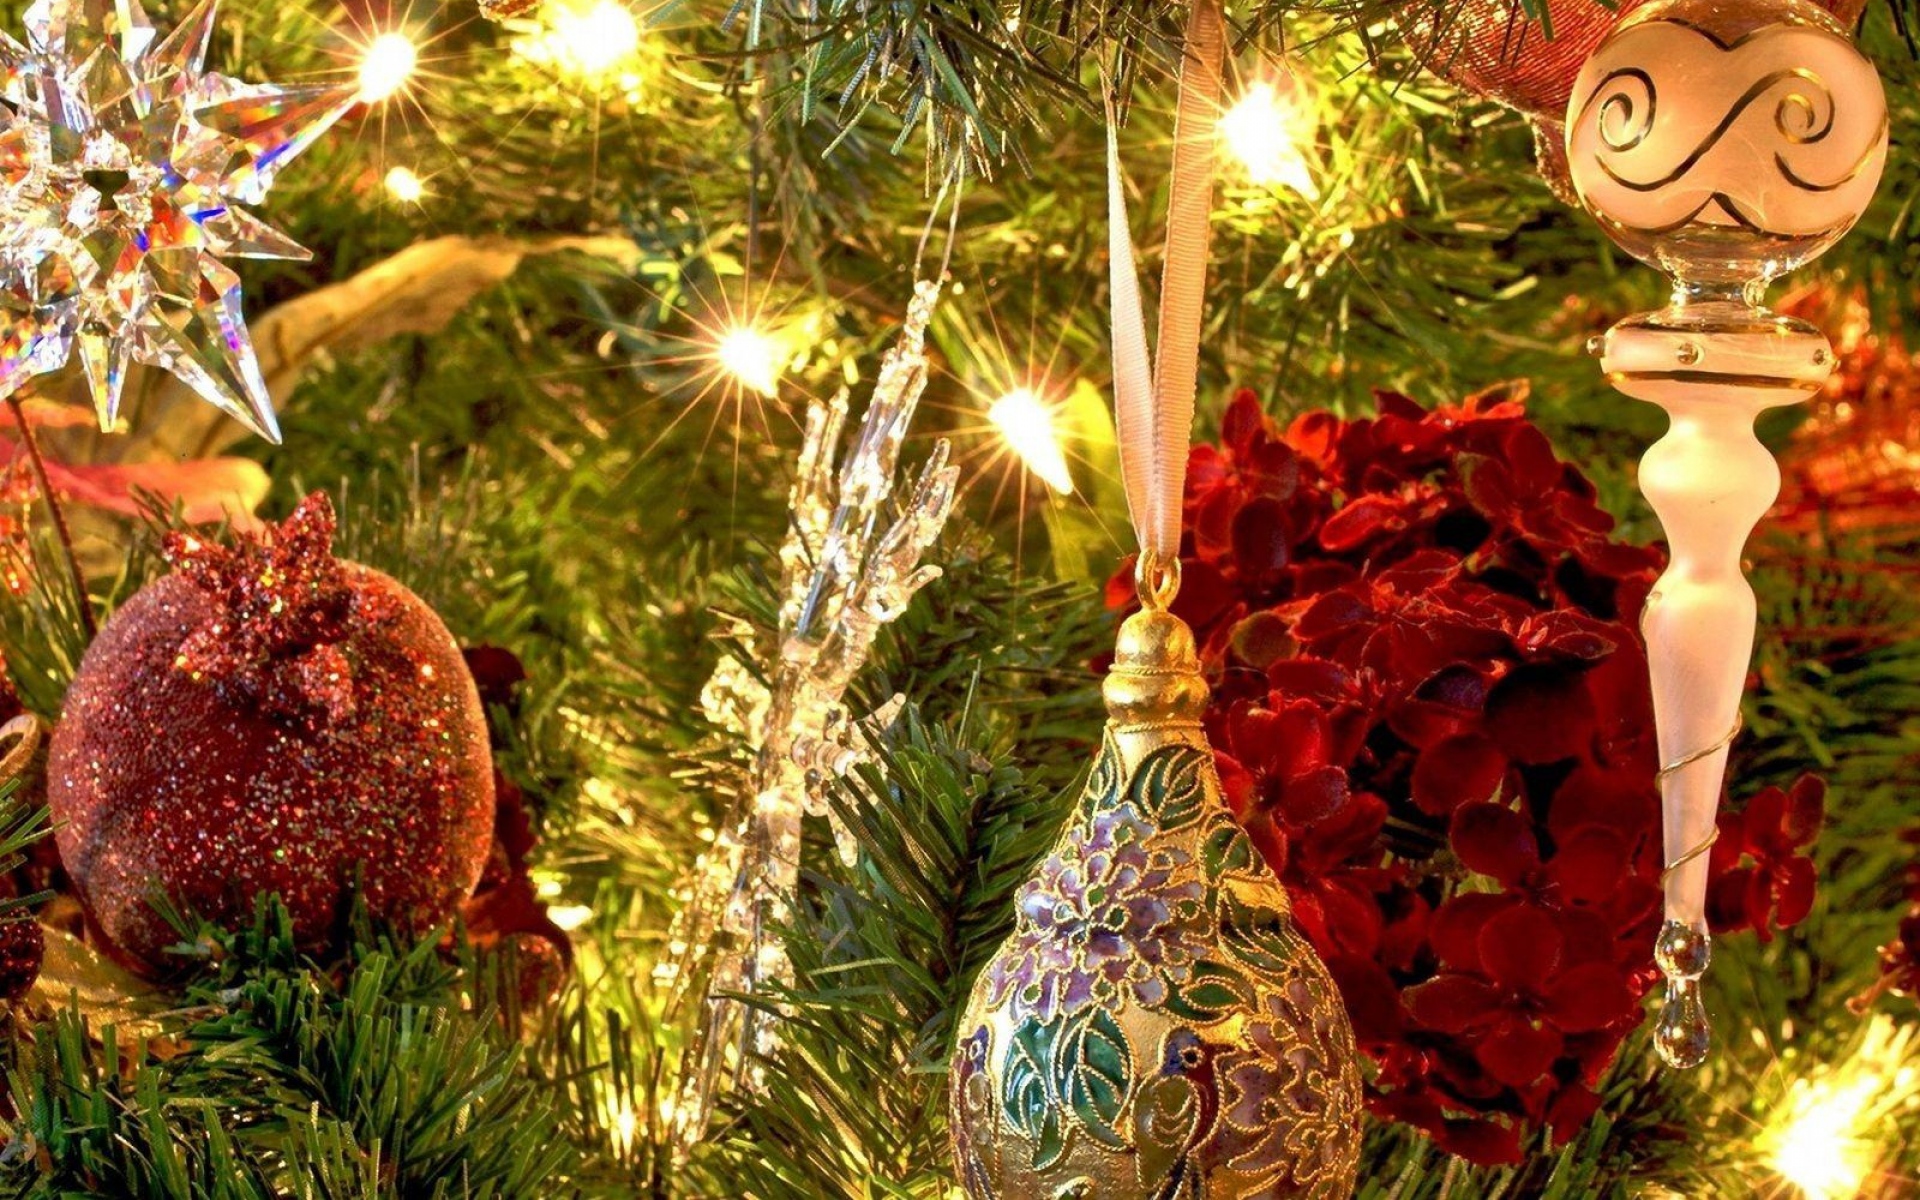 Картинки Рождественские игрушки, мячи, сосульки, дерево, сосновые иглы, гирлянды, праздник, настроение фото и обои на рабочий стол